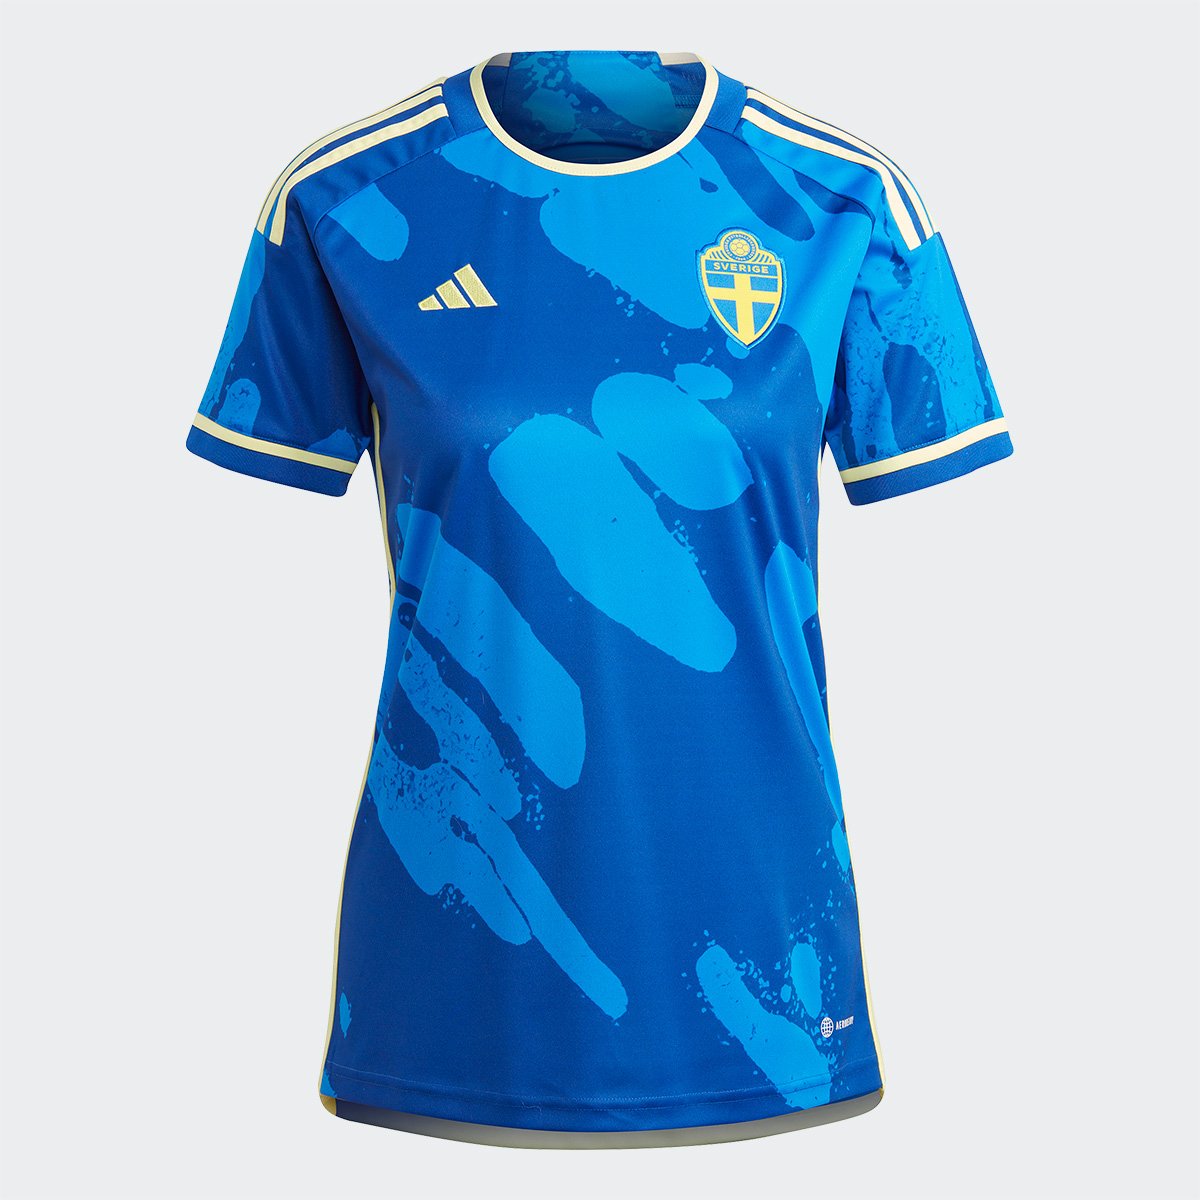 Camisa Seleção Suécia Away 23/24 s/n° Torcedor Adidas Feminina (tam. P M e GG)